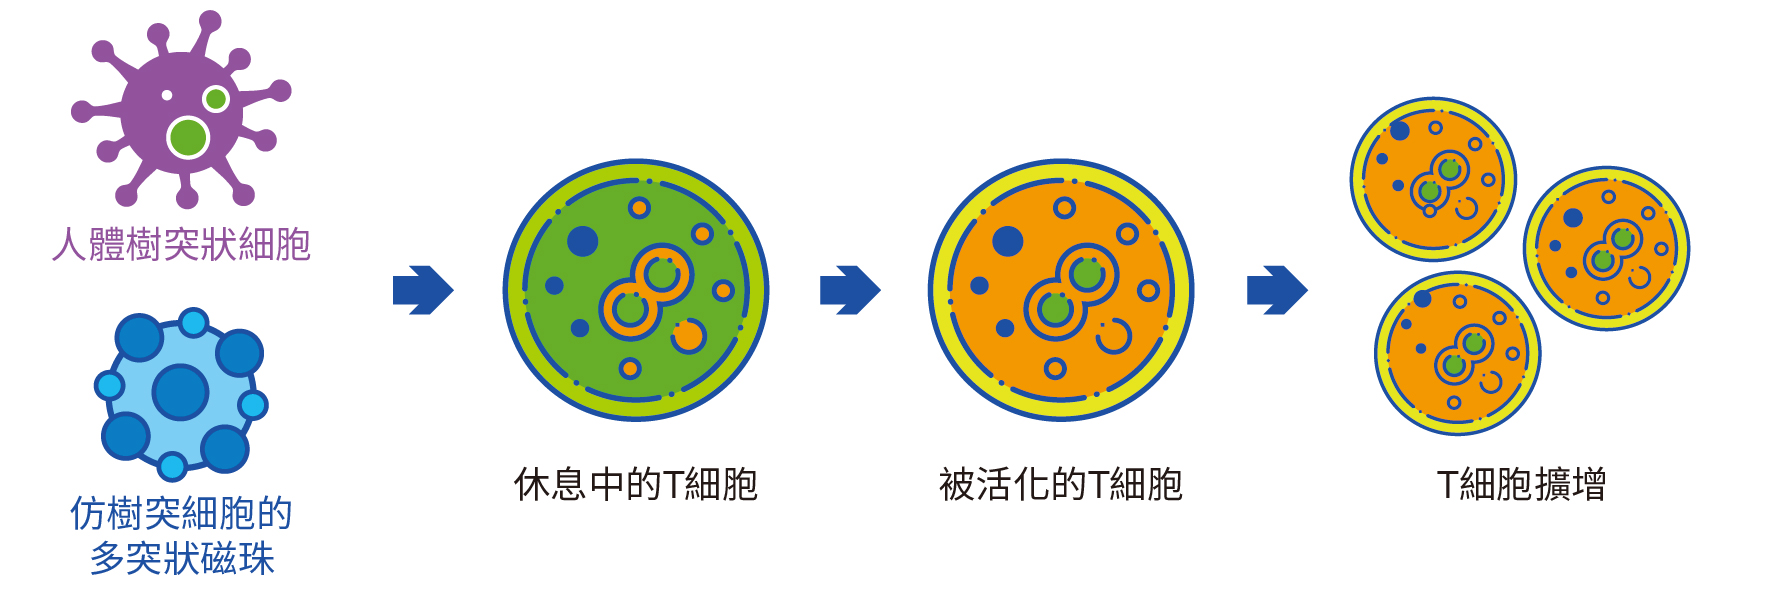 iKNOBEADS獨家的多突狀設計，與人體內活化T細胞的「樹突狀細胞」相似，能擴大接觸面積